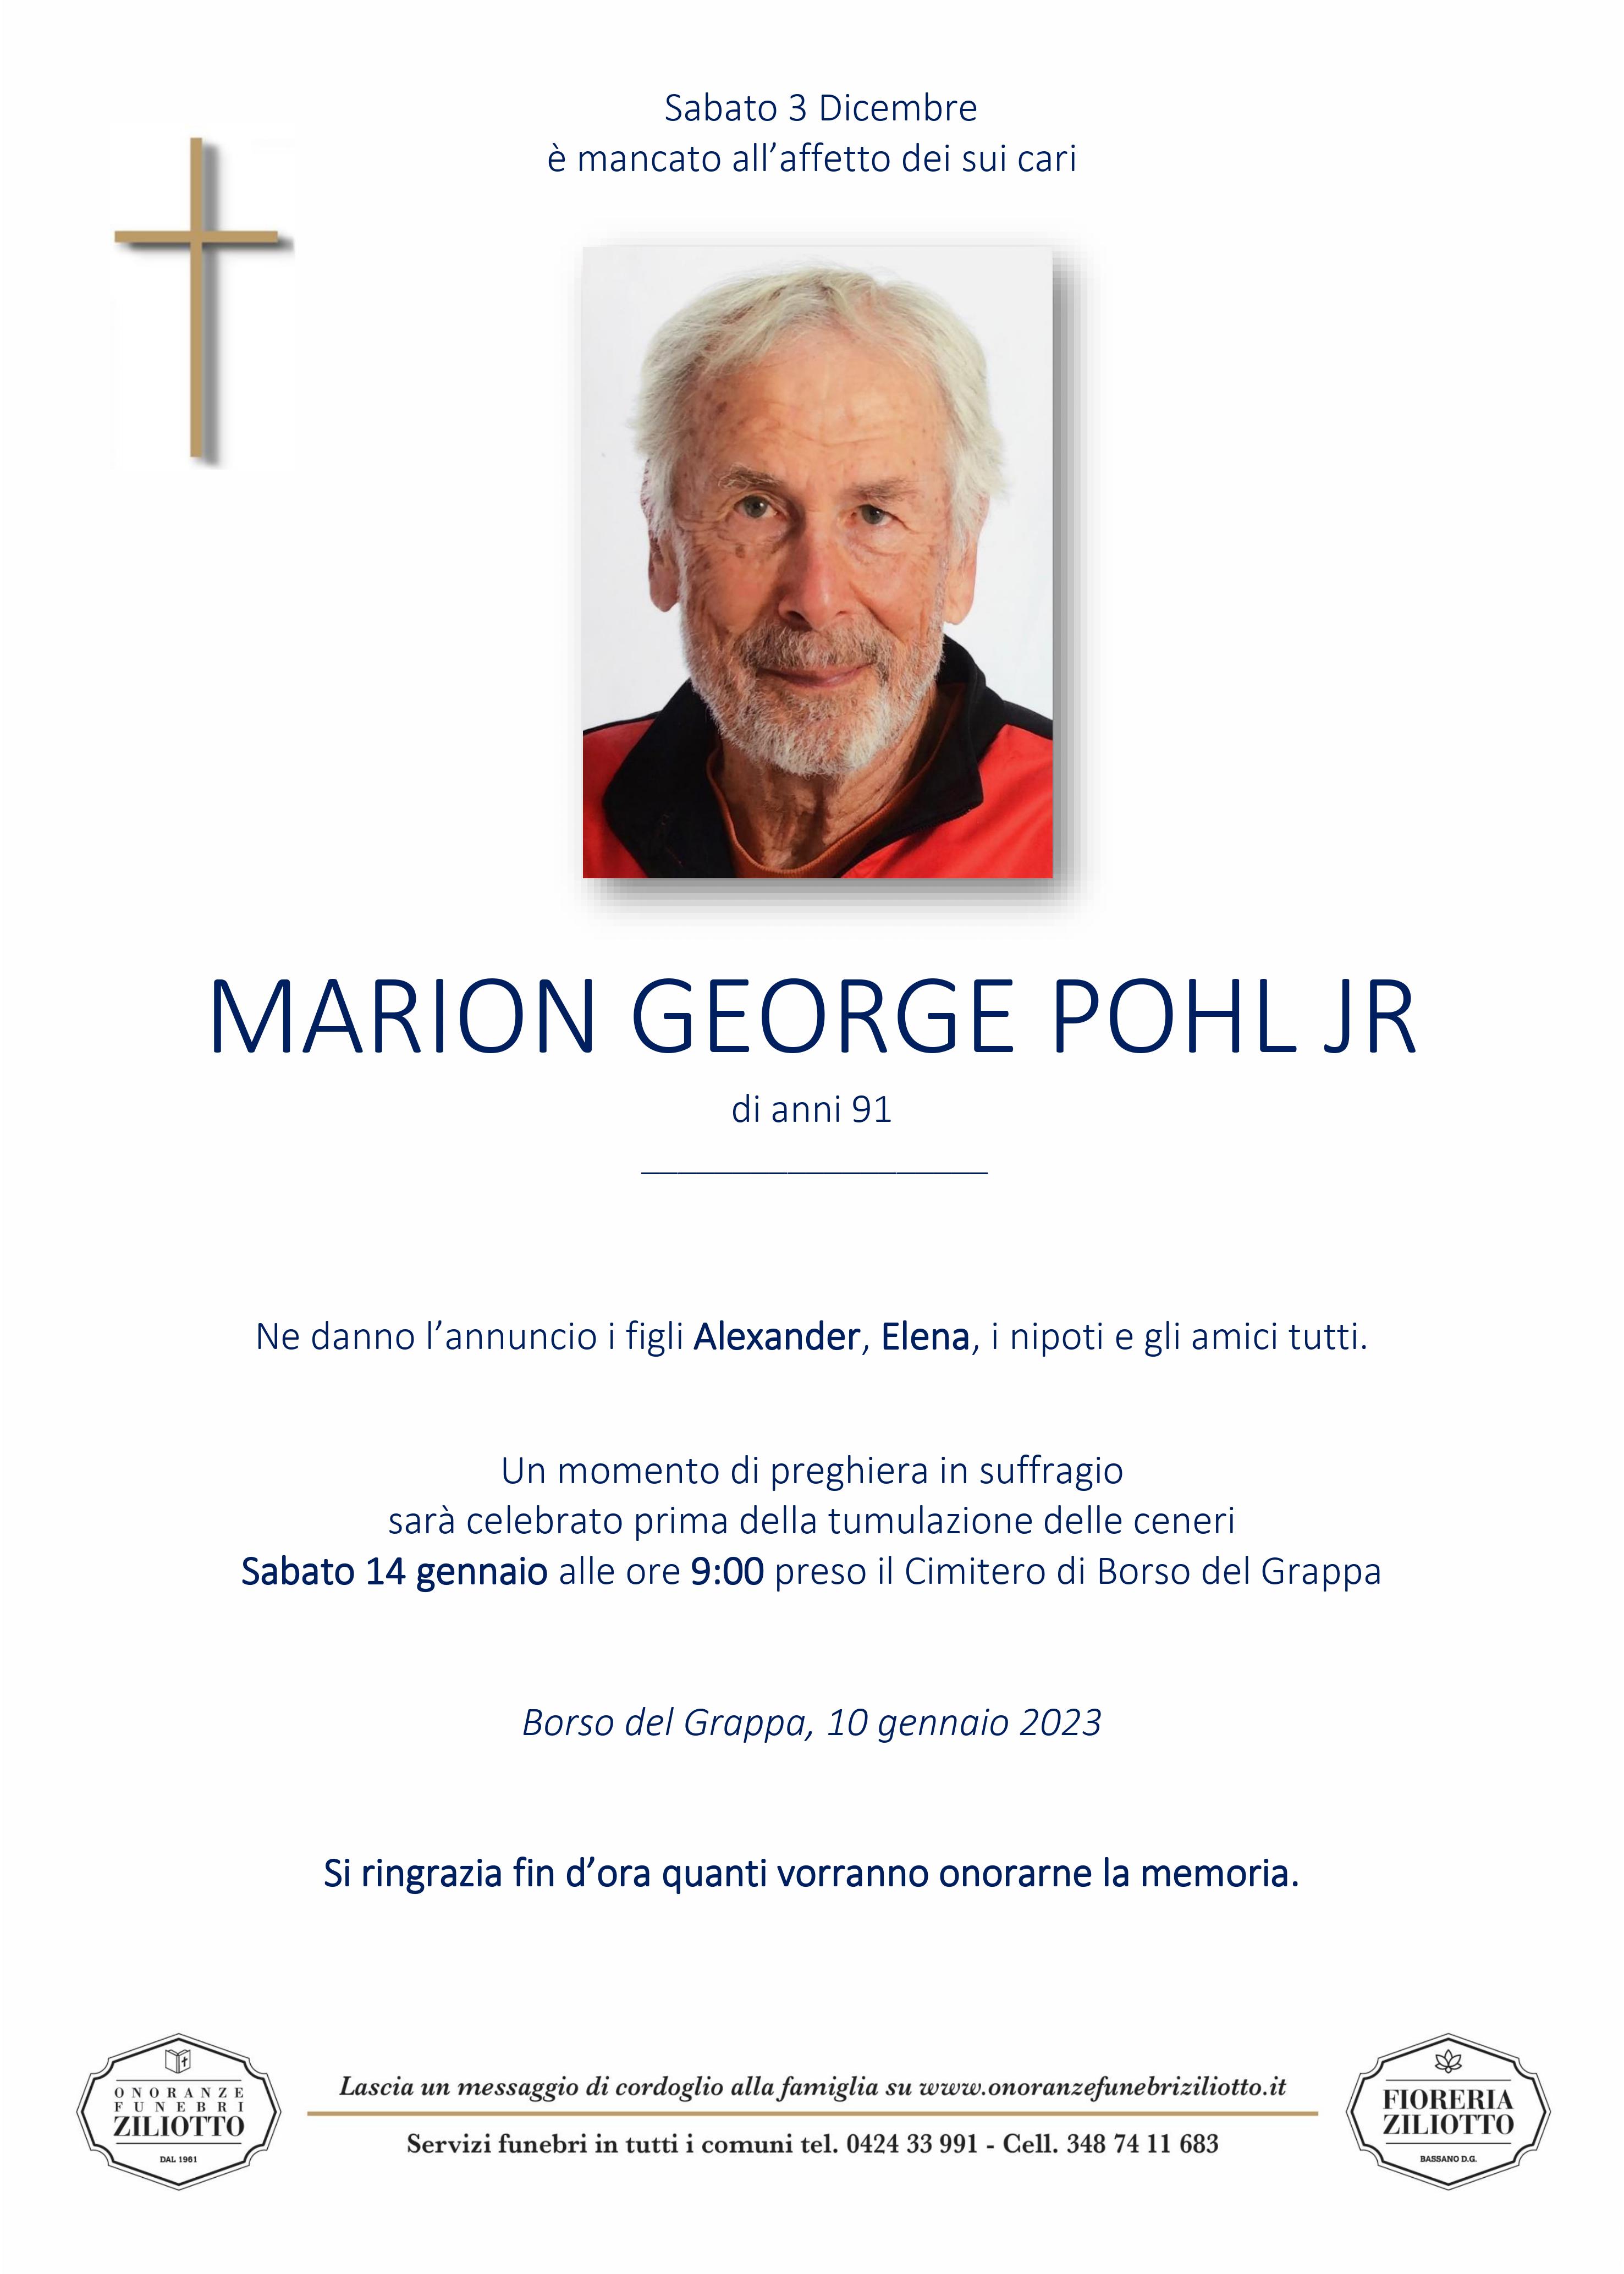 Marion George Pohl Jr - 91 anni - Borso del Grappa